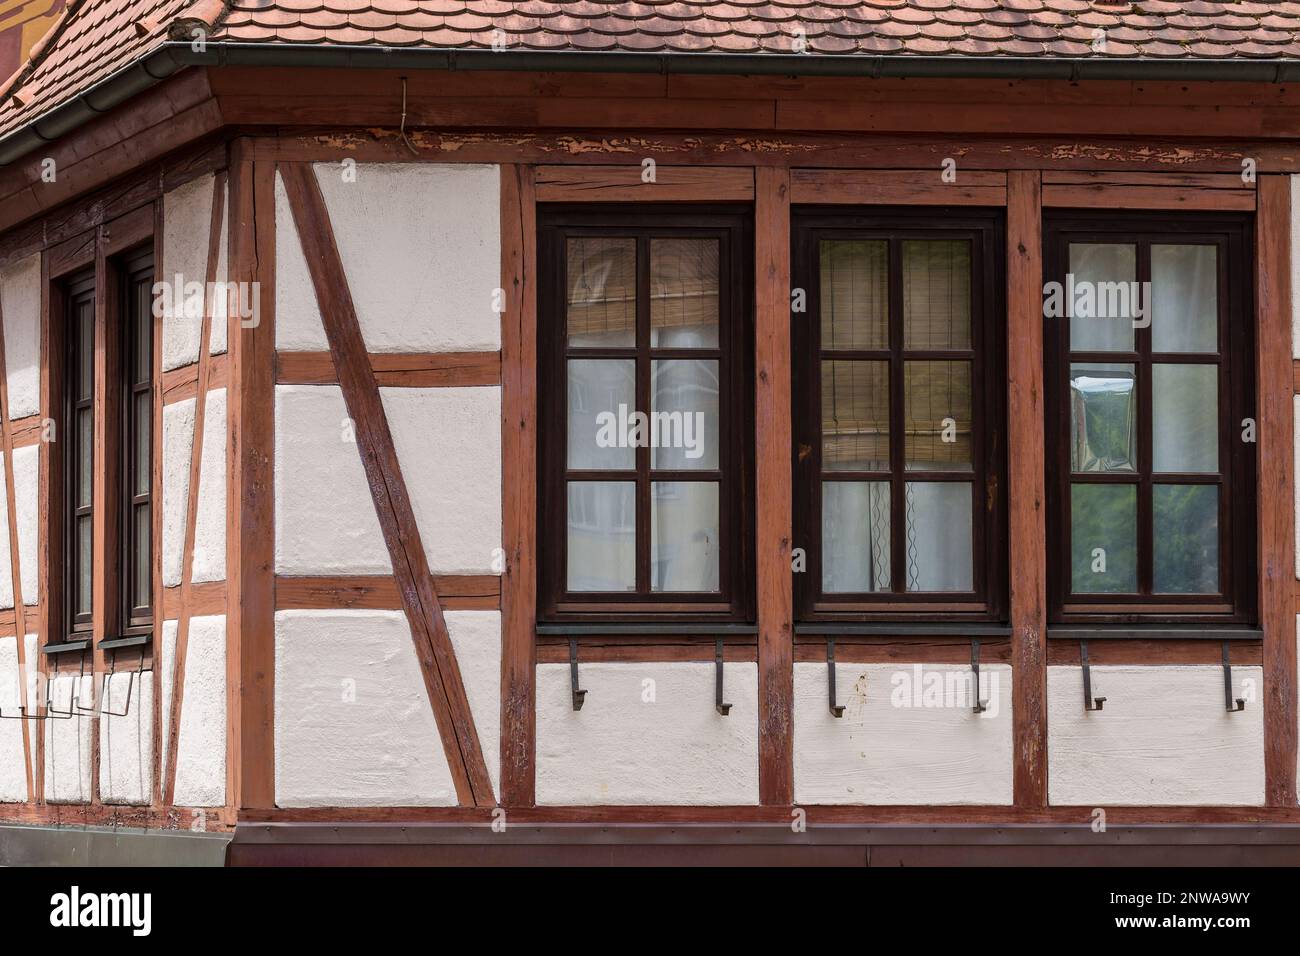 Dettaglio finestra orizzontale della vecchia costruzione di strutture in legno per la casa (tedesco: Holzfachwerk) in Germania Foto Stock